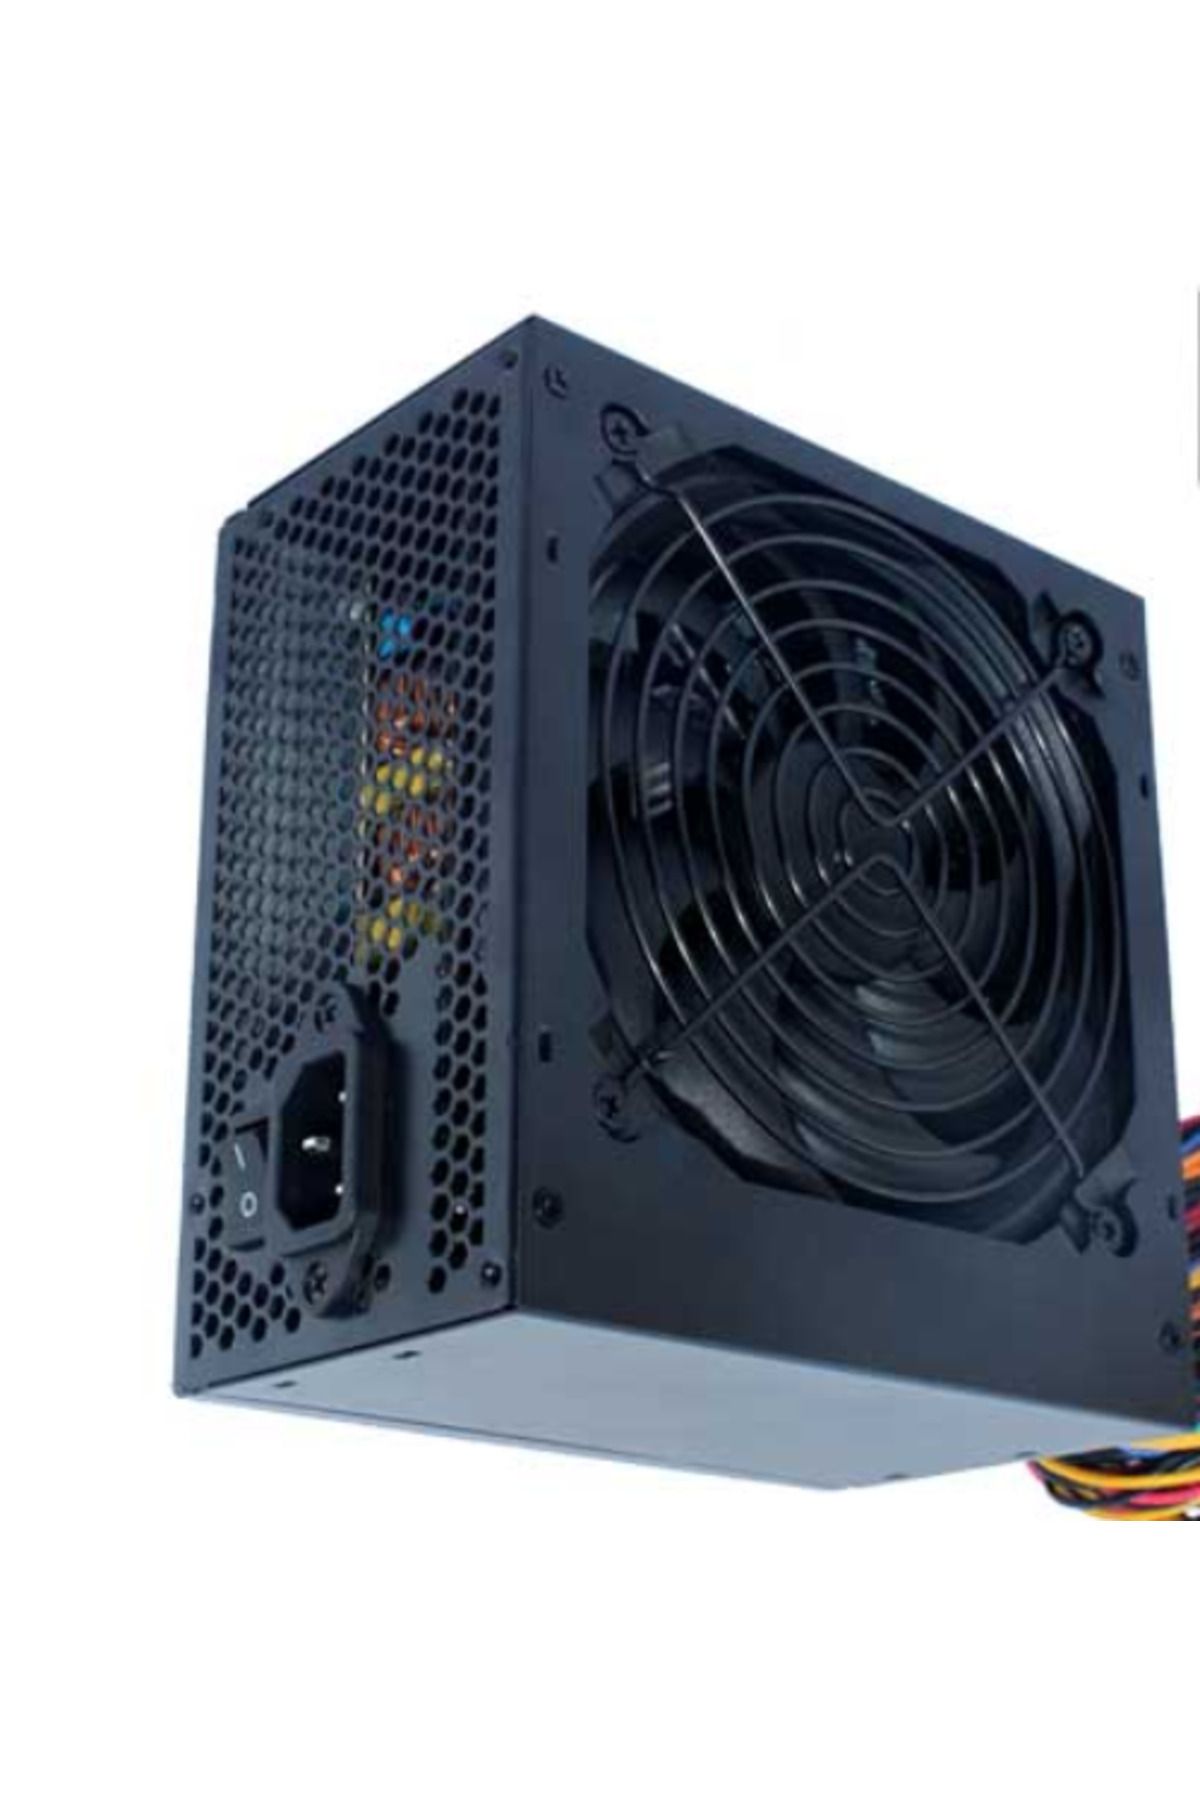 Xigmatek Xıgmatek En40704 500W 80+ Atx Power Supply 12 Cm Fan (Pfc)